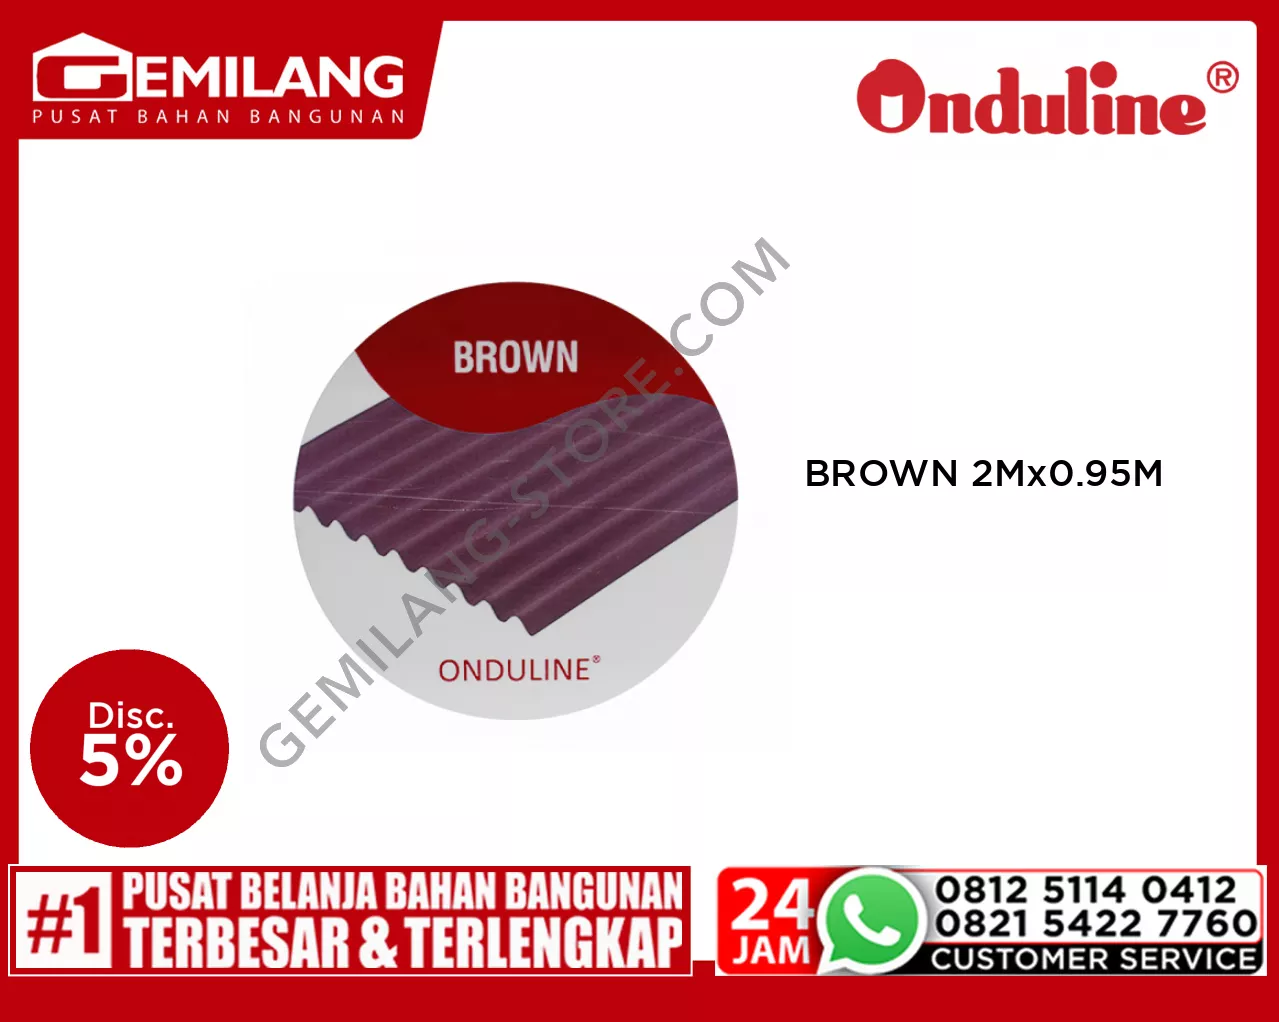 ONDULINE BROWN 2M x 0.95M